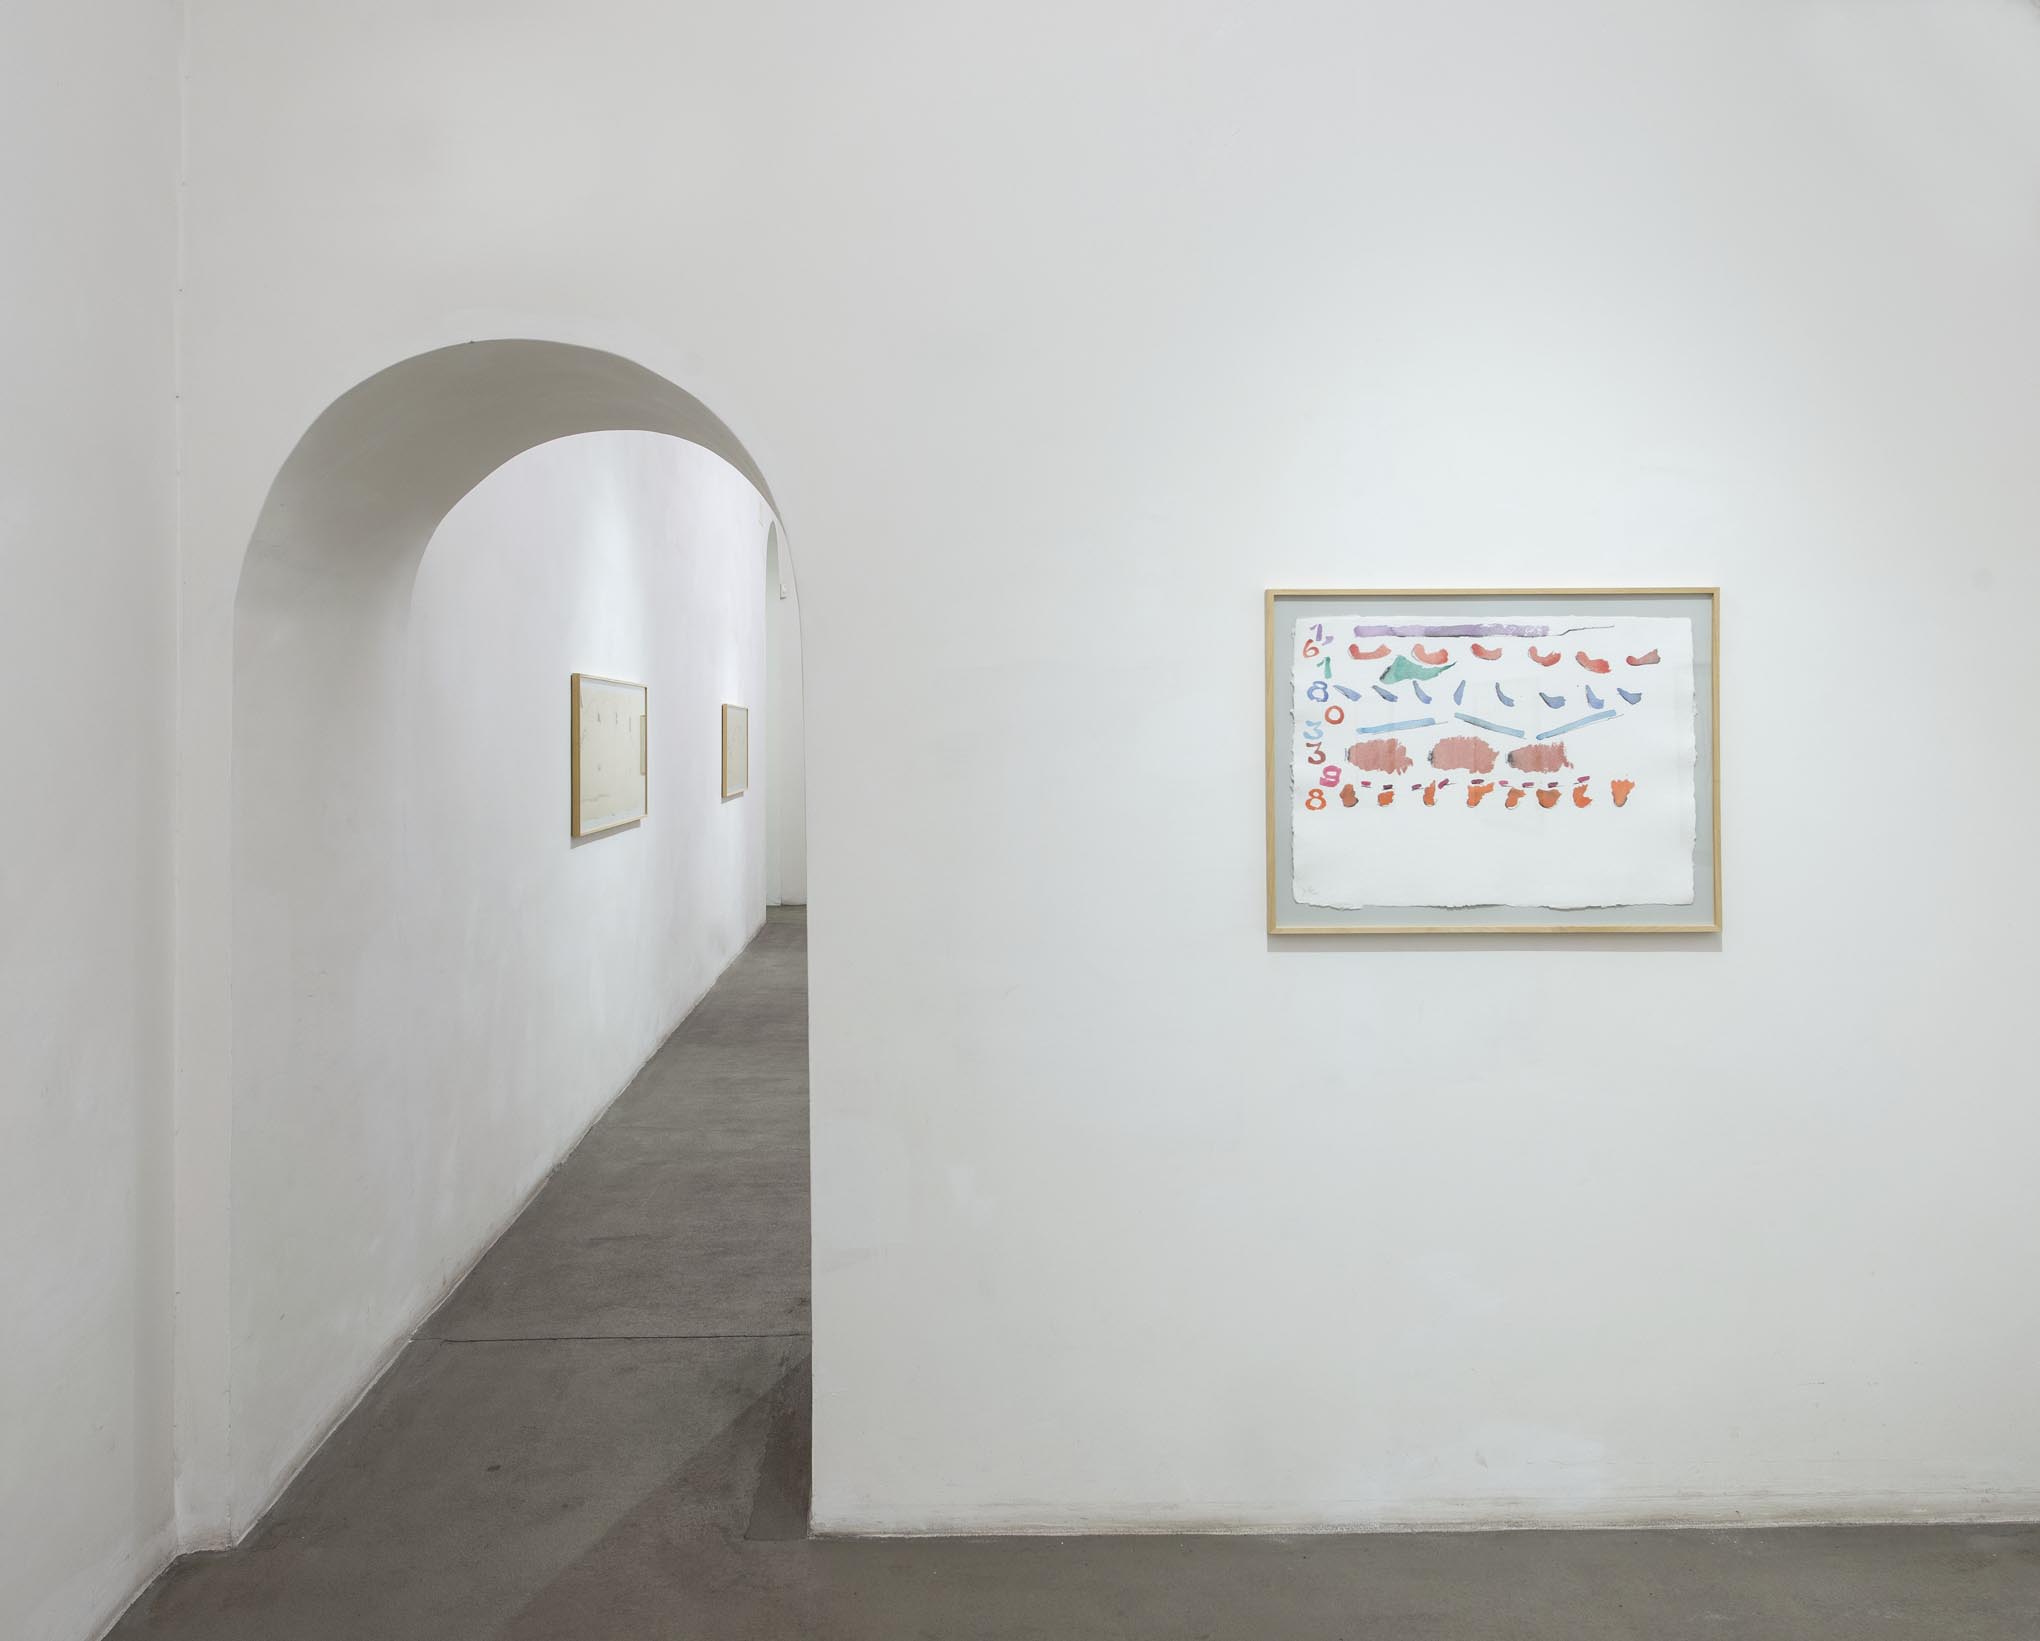 Giorgio Griffa, Works on Paper. Installation view at Fondazione Giuliani, photo by Giorgio Benni